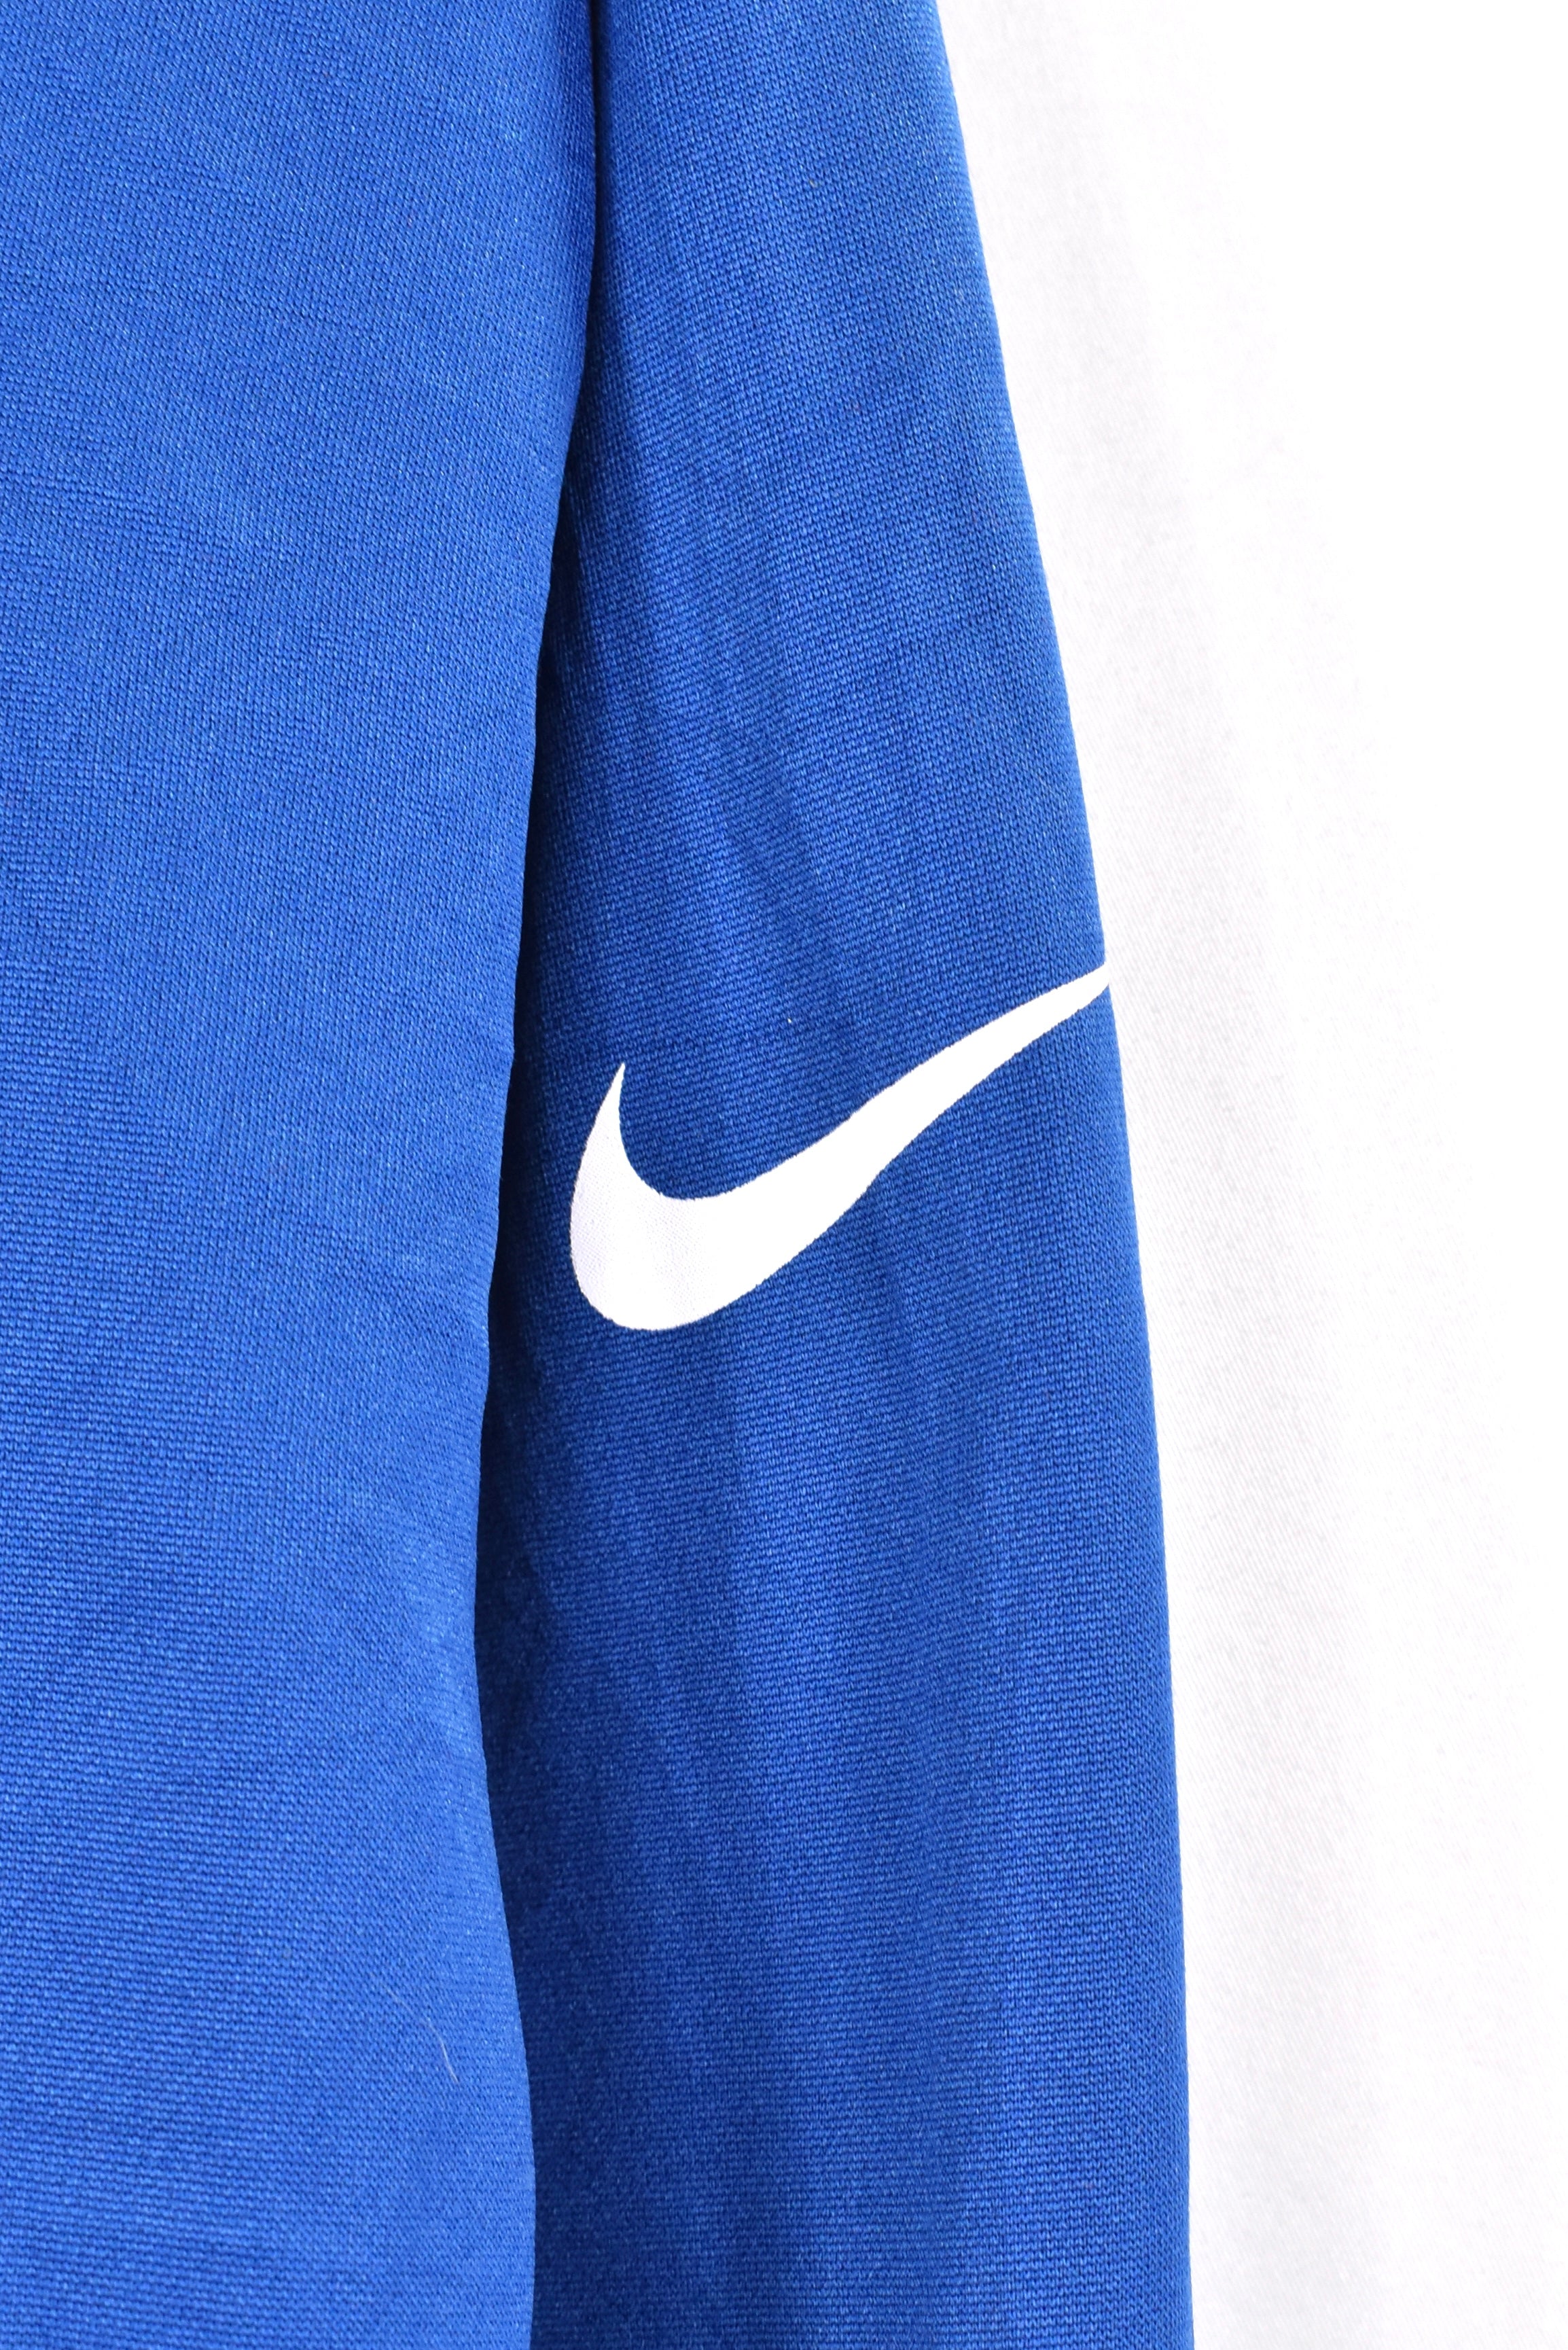 Vintage Indianapolis Colts hoodie, NFL blue graphic sweatshirt - AU XL PRO SPORT